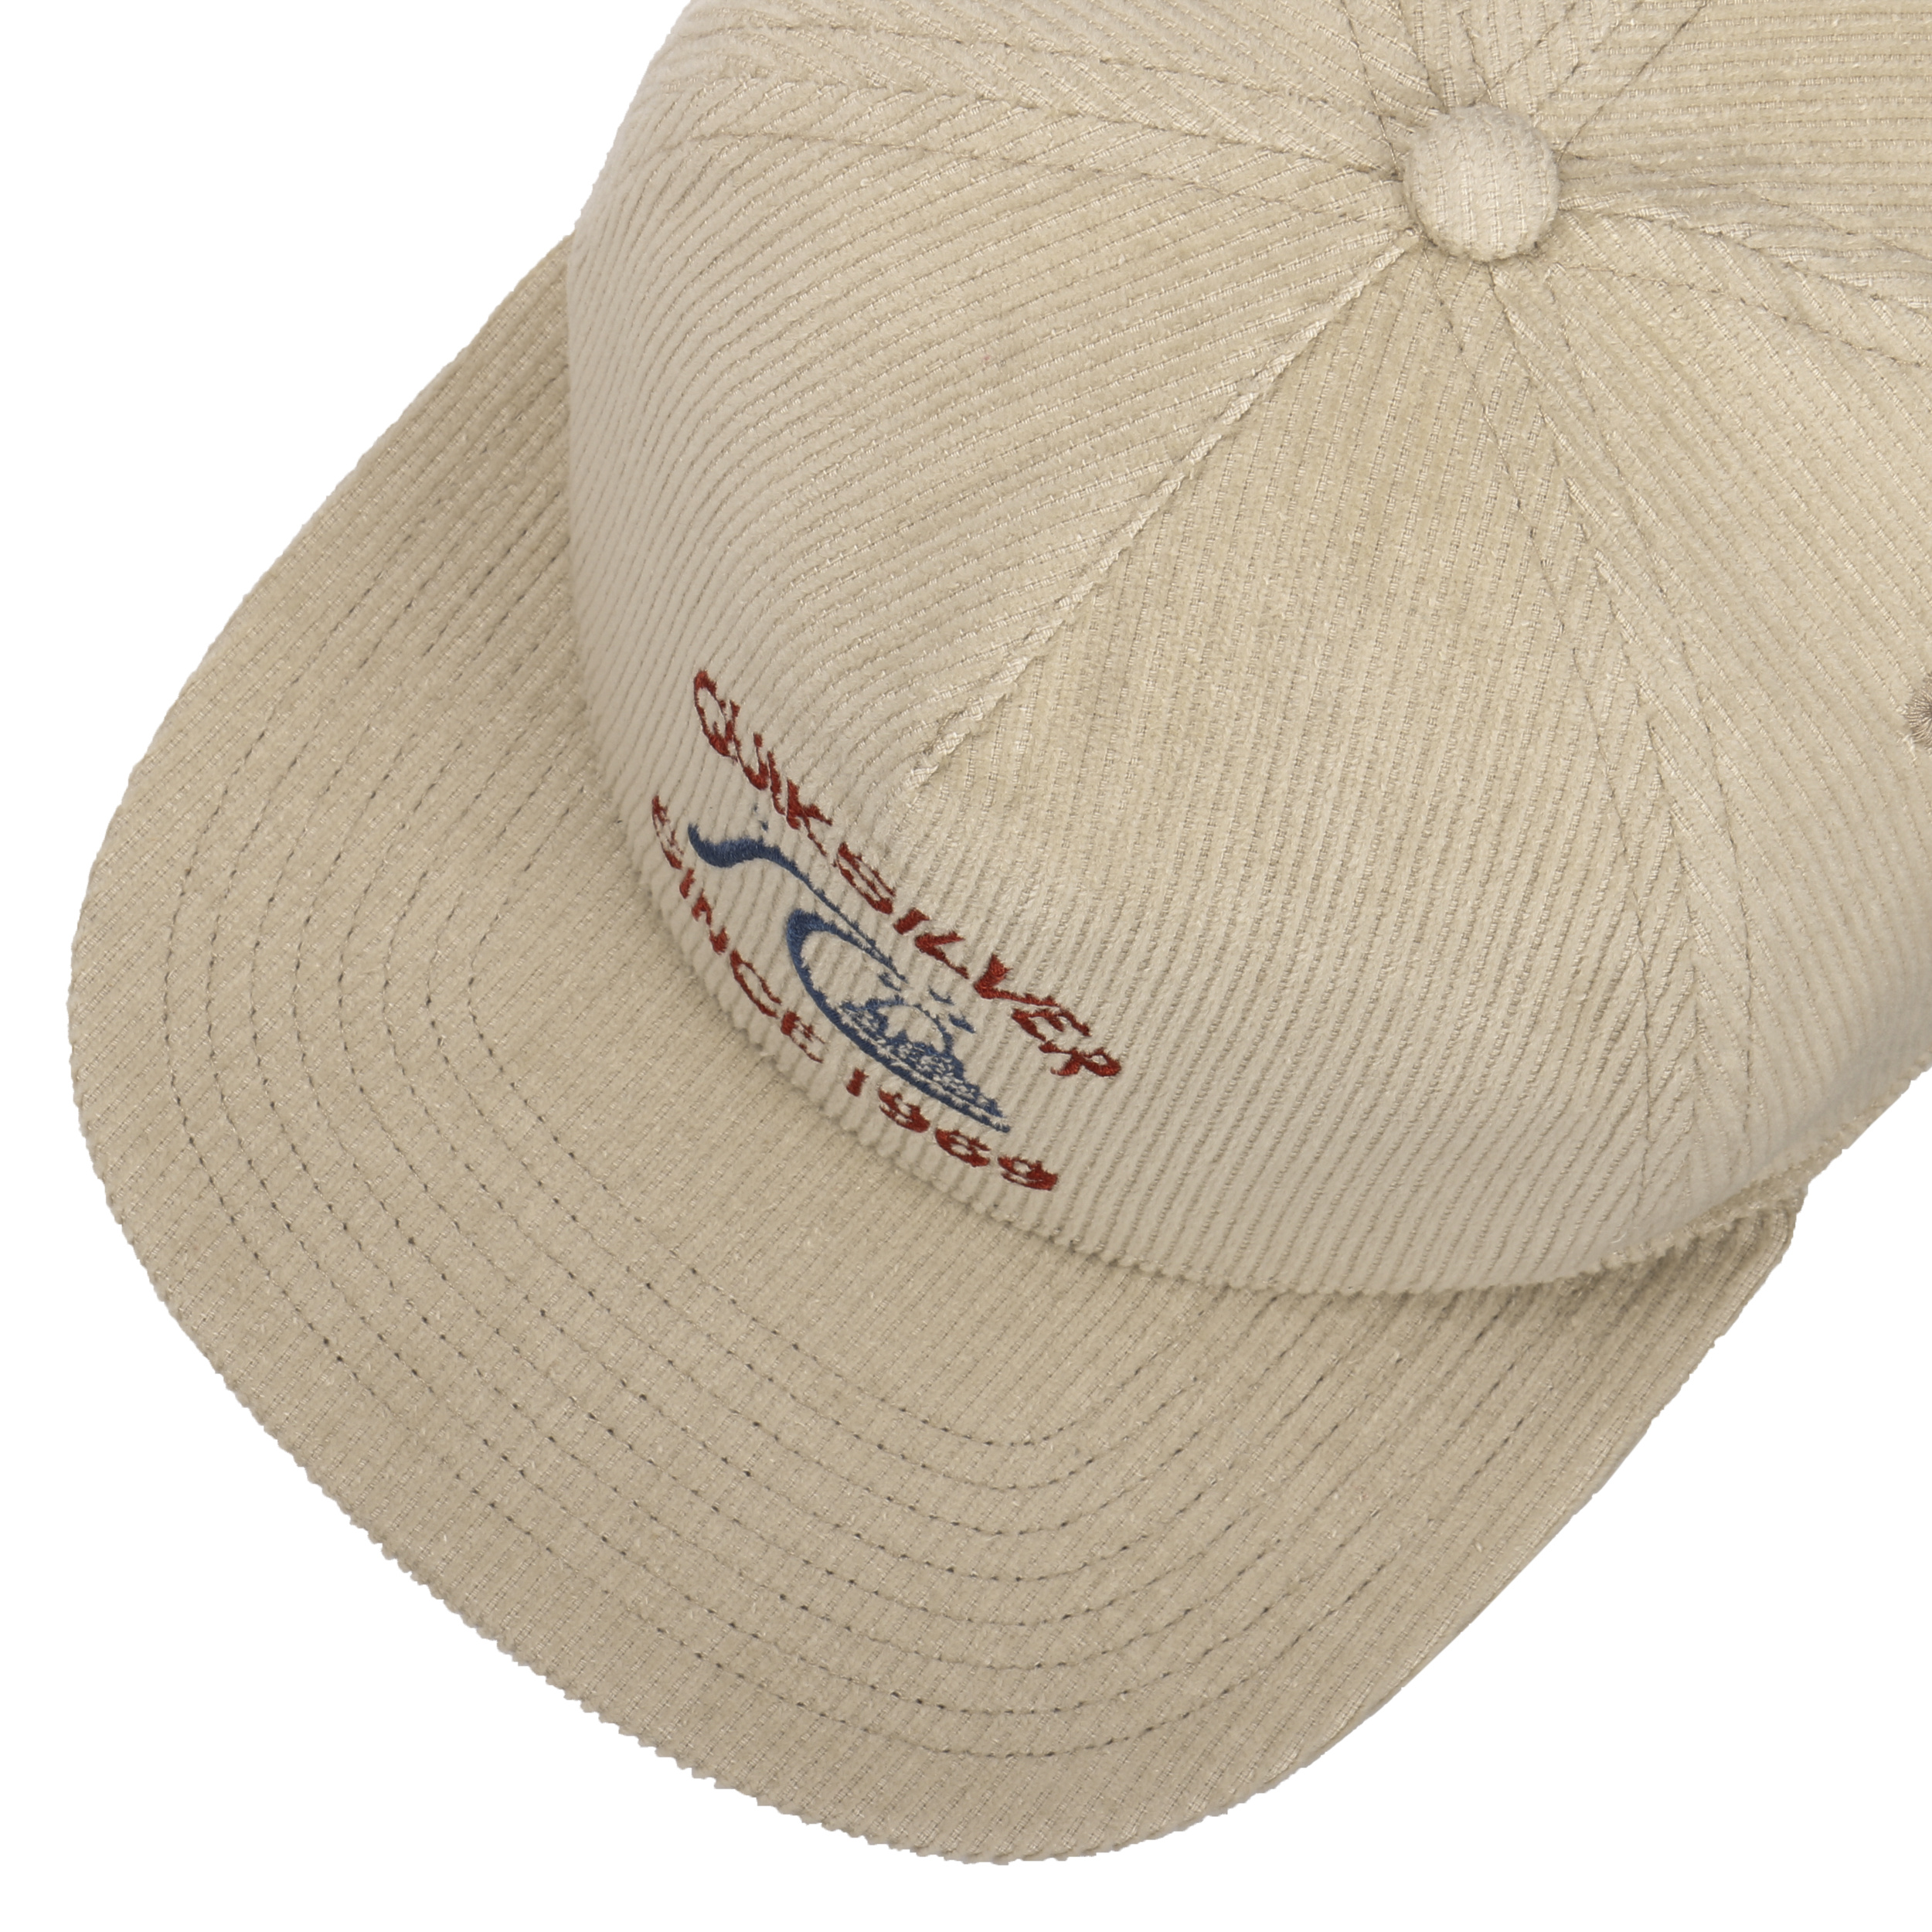 Quiksilver Slouchman Snapback Cap, $26, Nordstrom